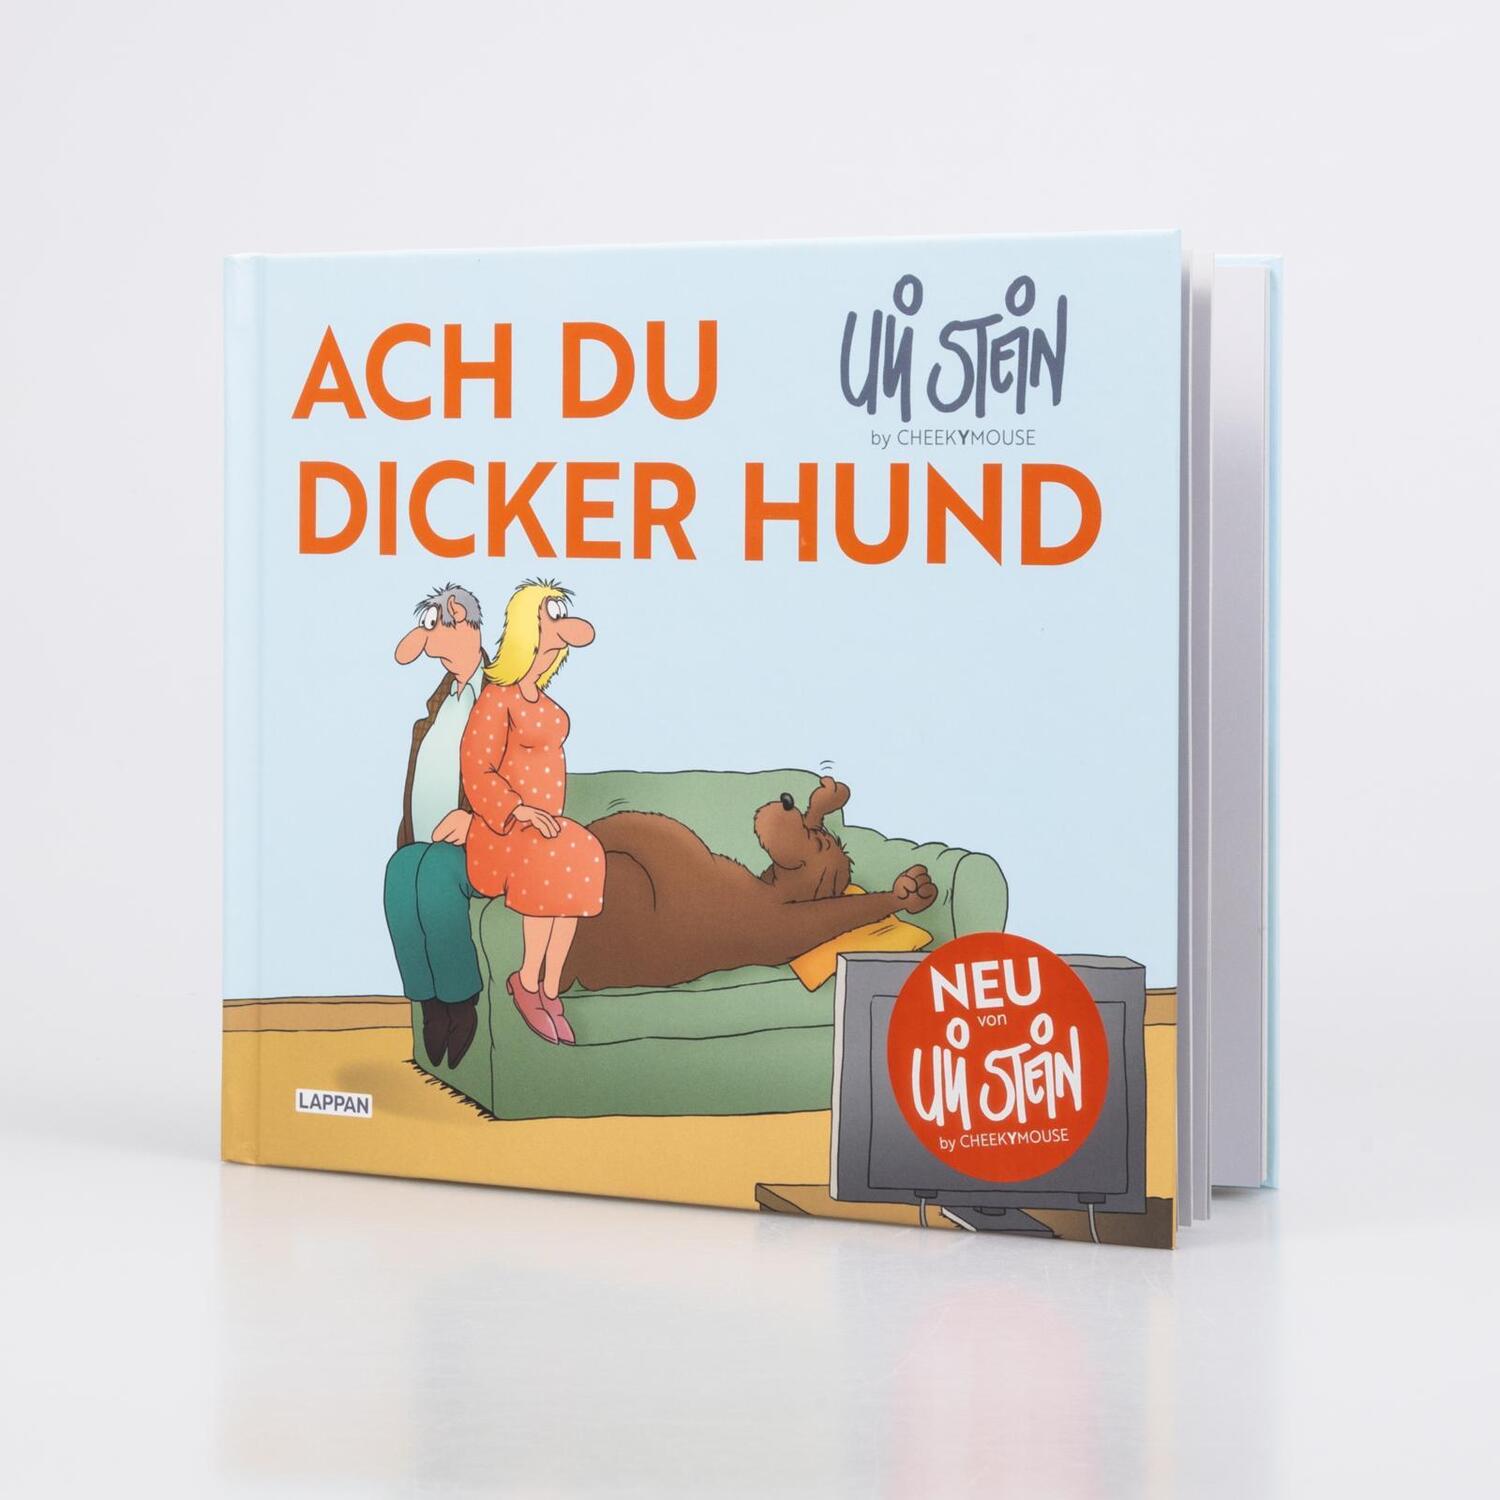 Bild: 9783830336389 | Ach du dicker Hund (Uli Stein by CheekYmouse ) | Uli Stein | Buch